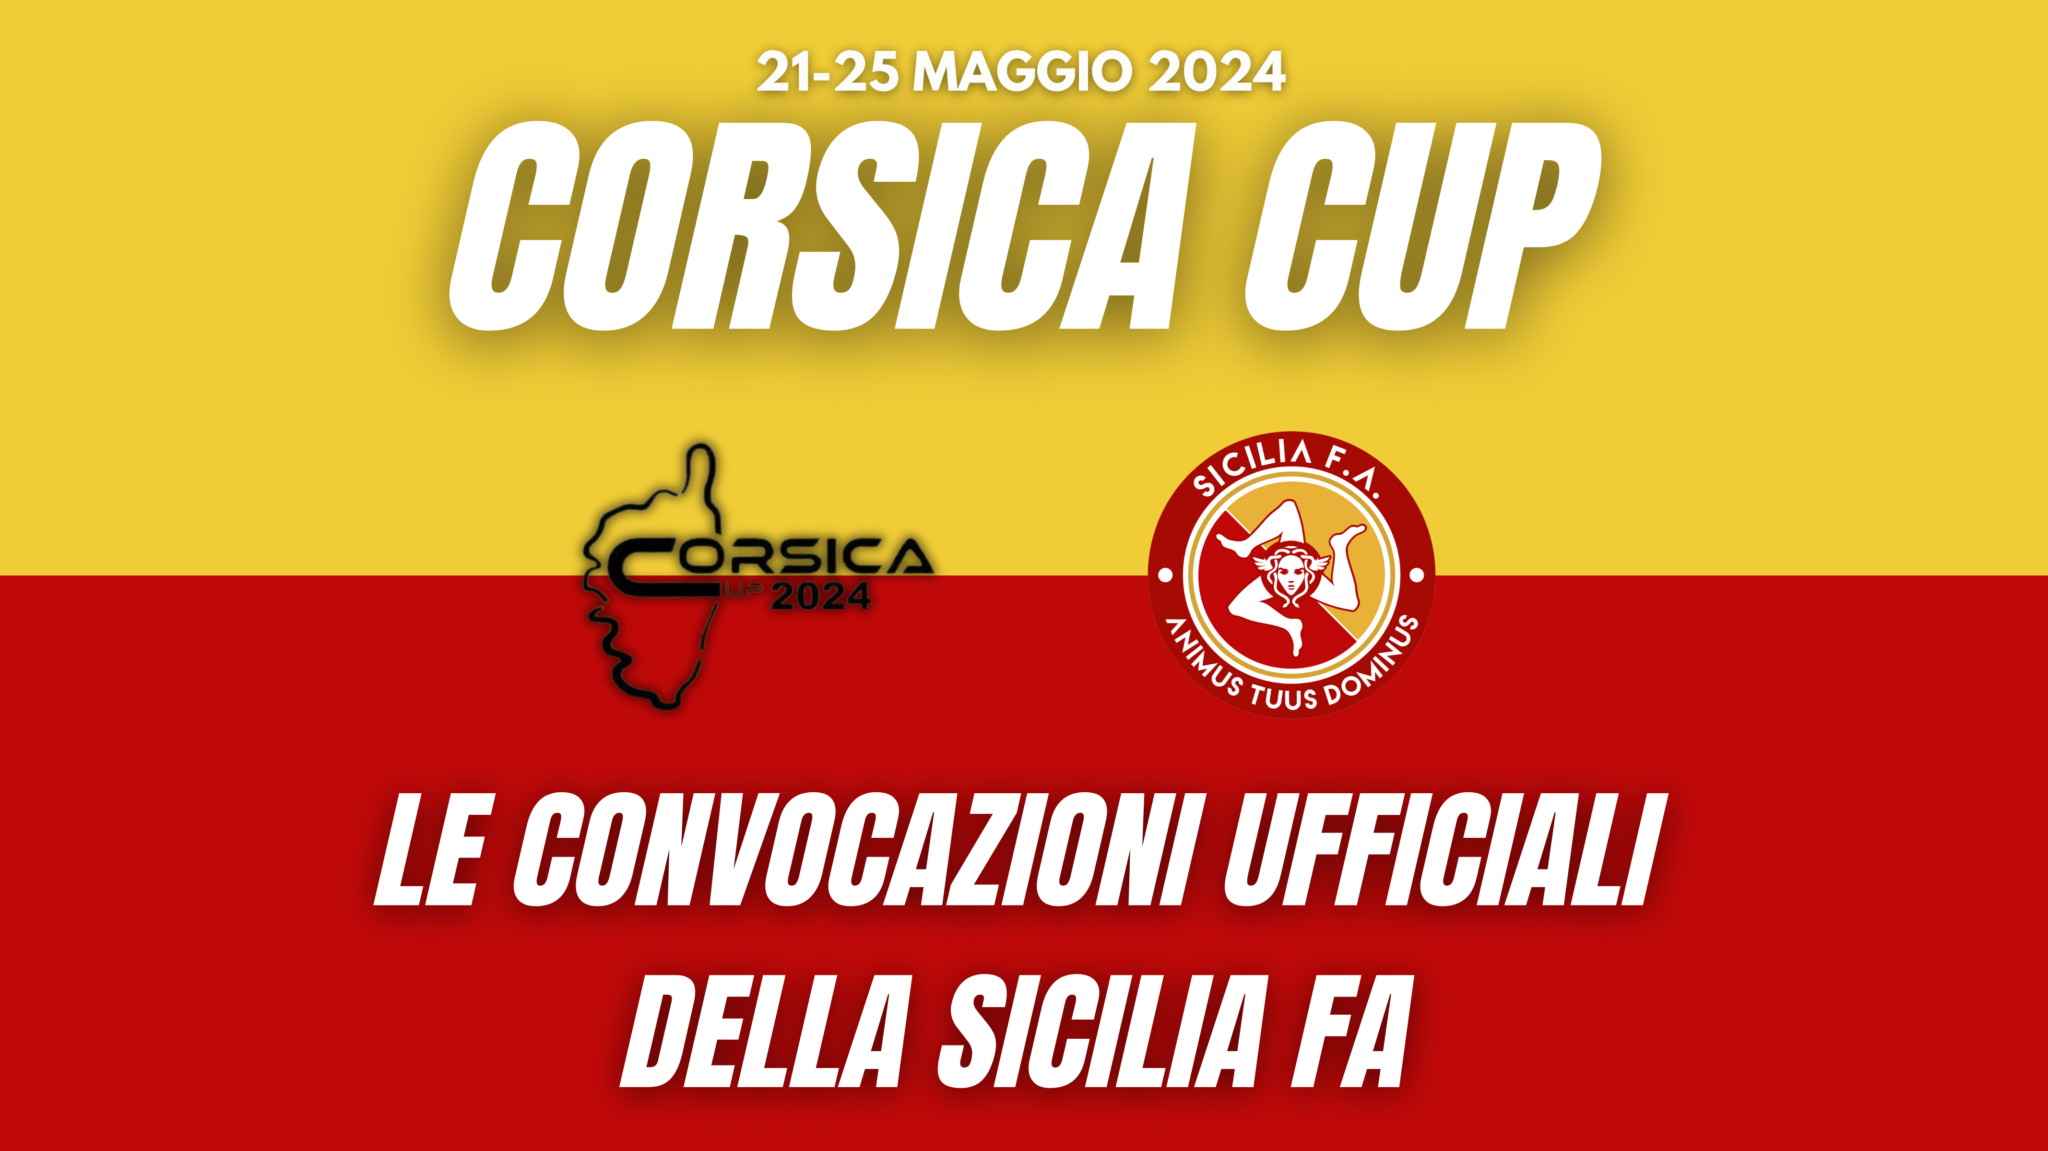 Corsica Cup 2024: le convocazioni ufficiali della Sicilia